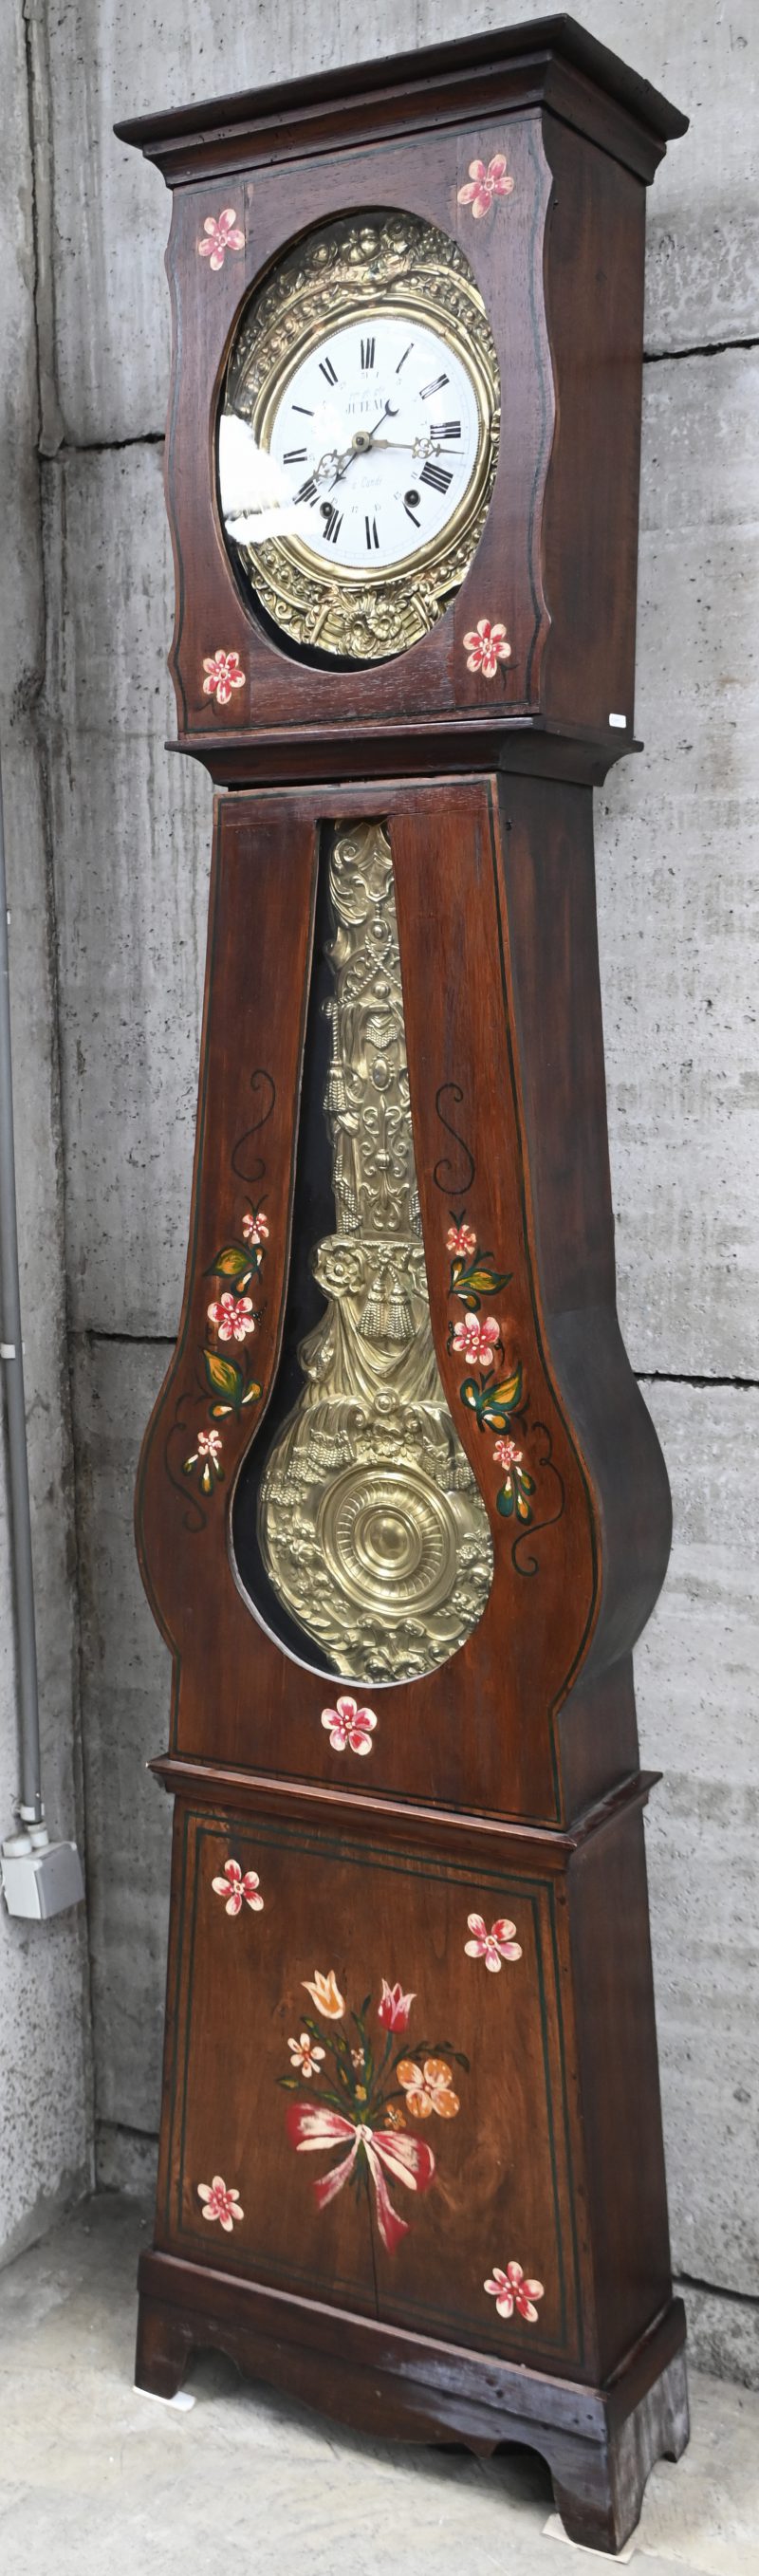 Een Franse comtoise klok met opschrift op de wijzerplaat Juteau à Candé in een houten kast met geschilderde bloemen versierd.